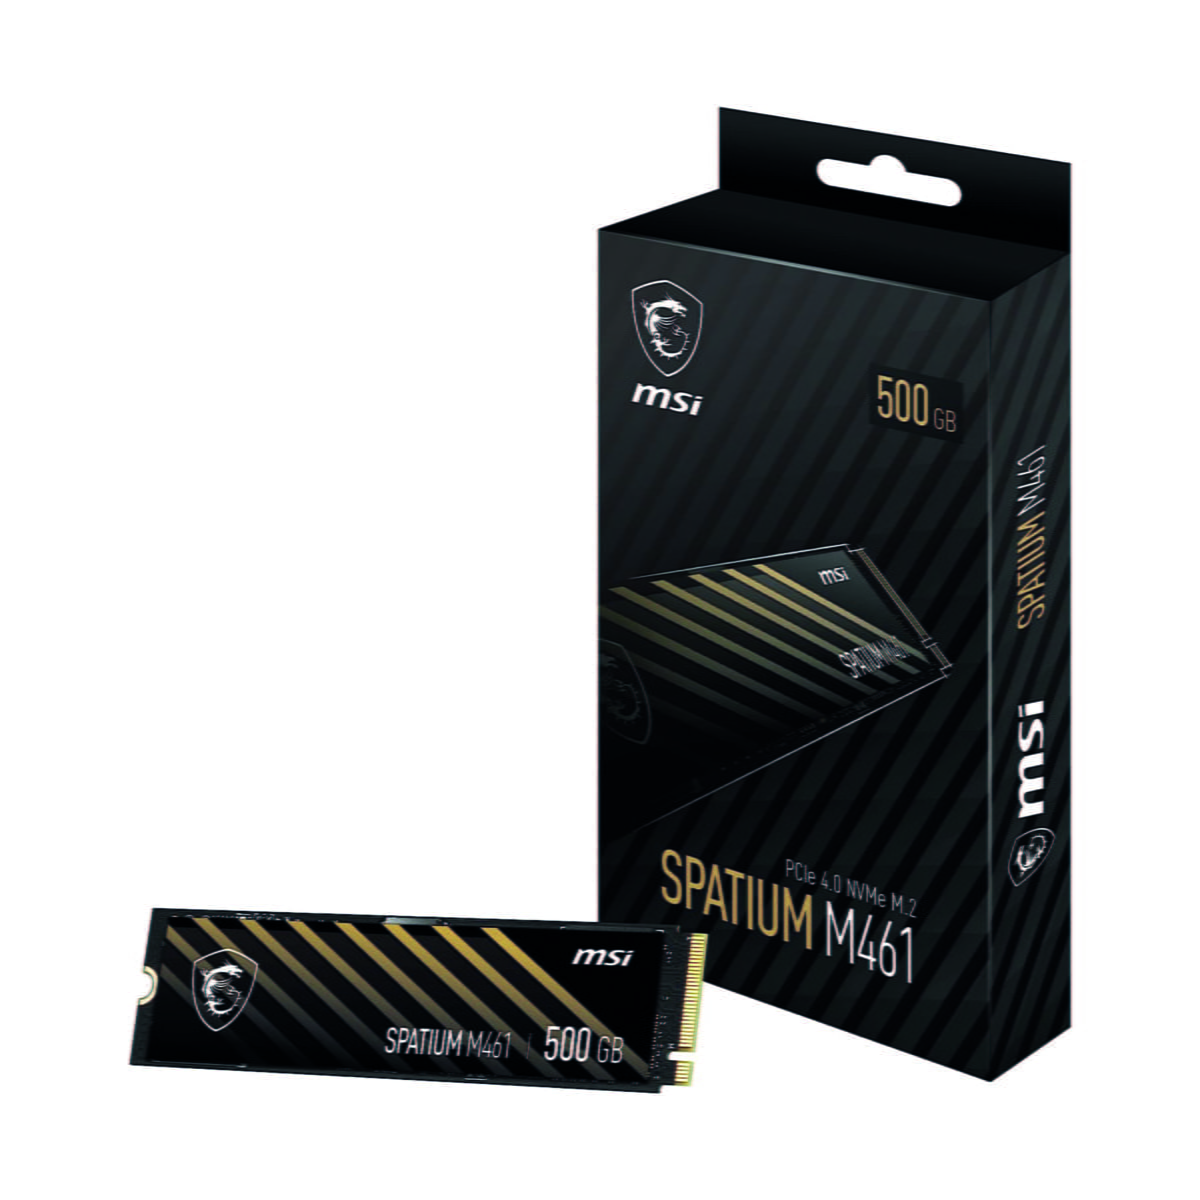 MSI SPATIUM M461 PCIe 4.0 NVMe M.2 500GB Internal SSD